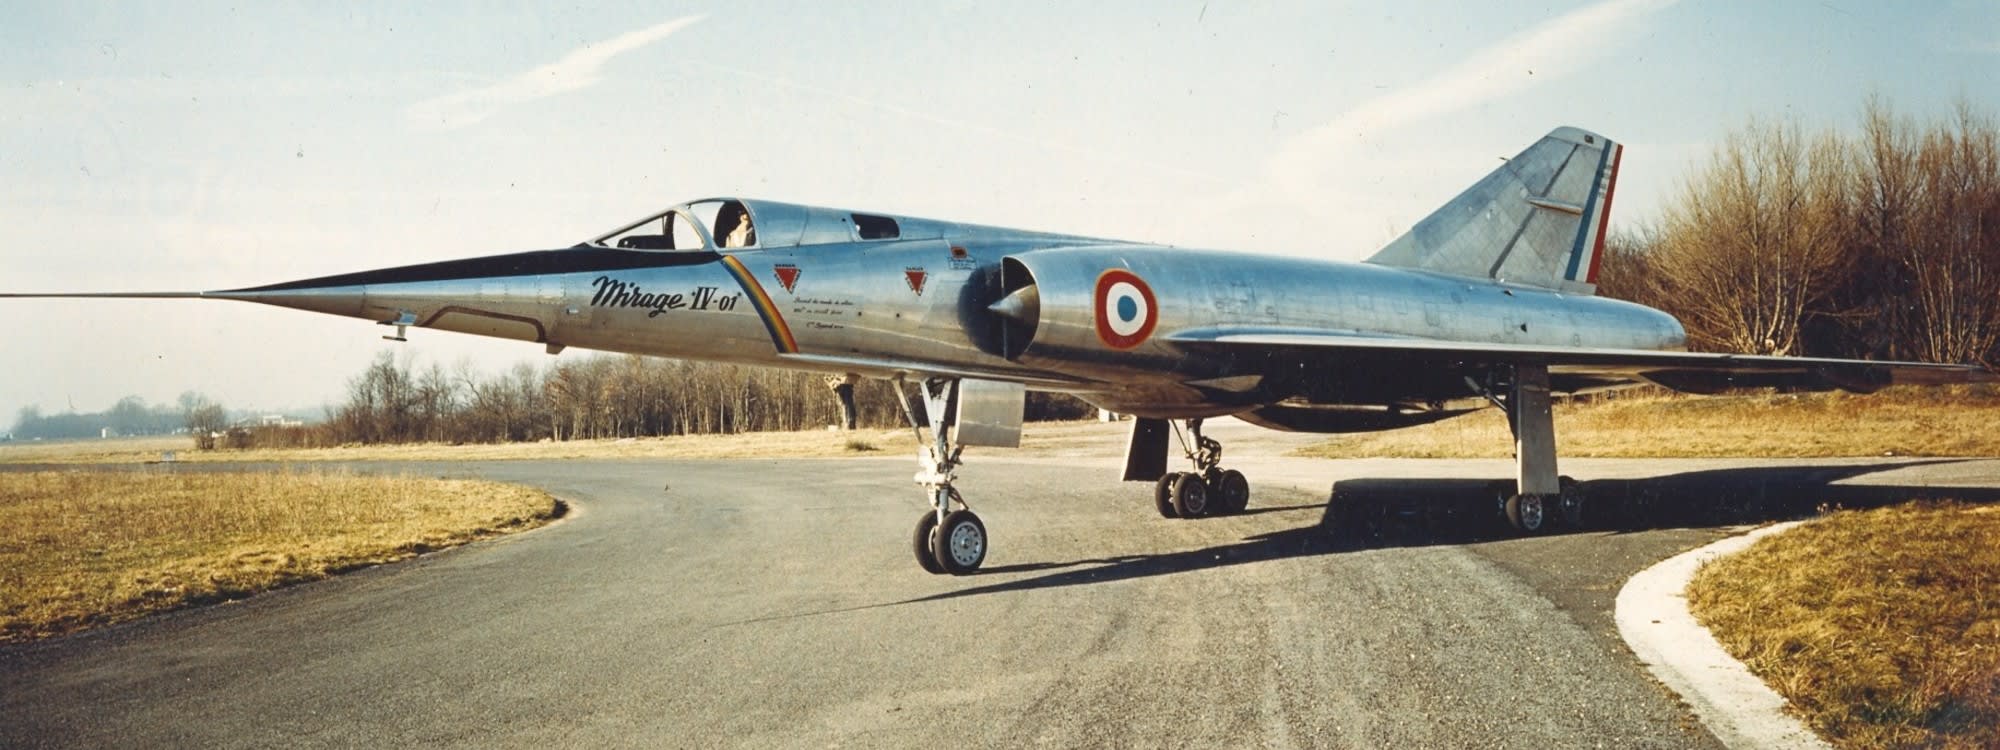 Le prototype du Mirage IV a effectué son premier vol il y a 50 ans, le 17 juin 1959.